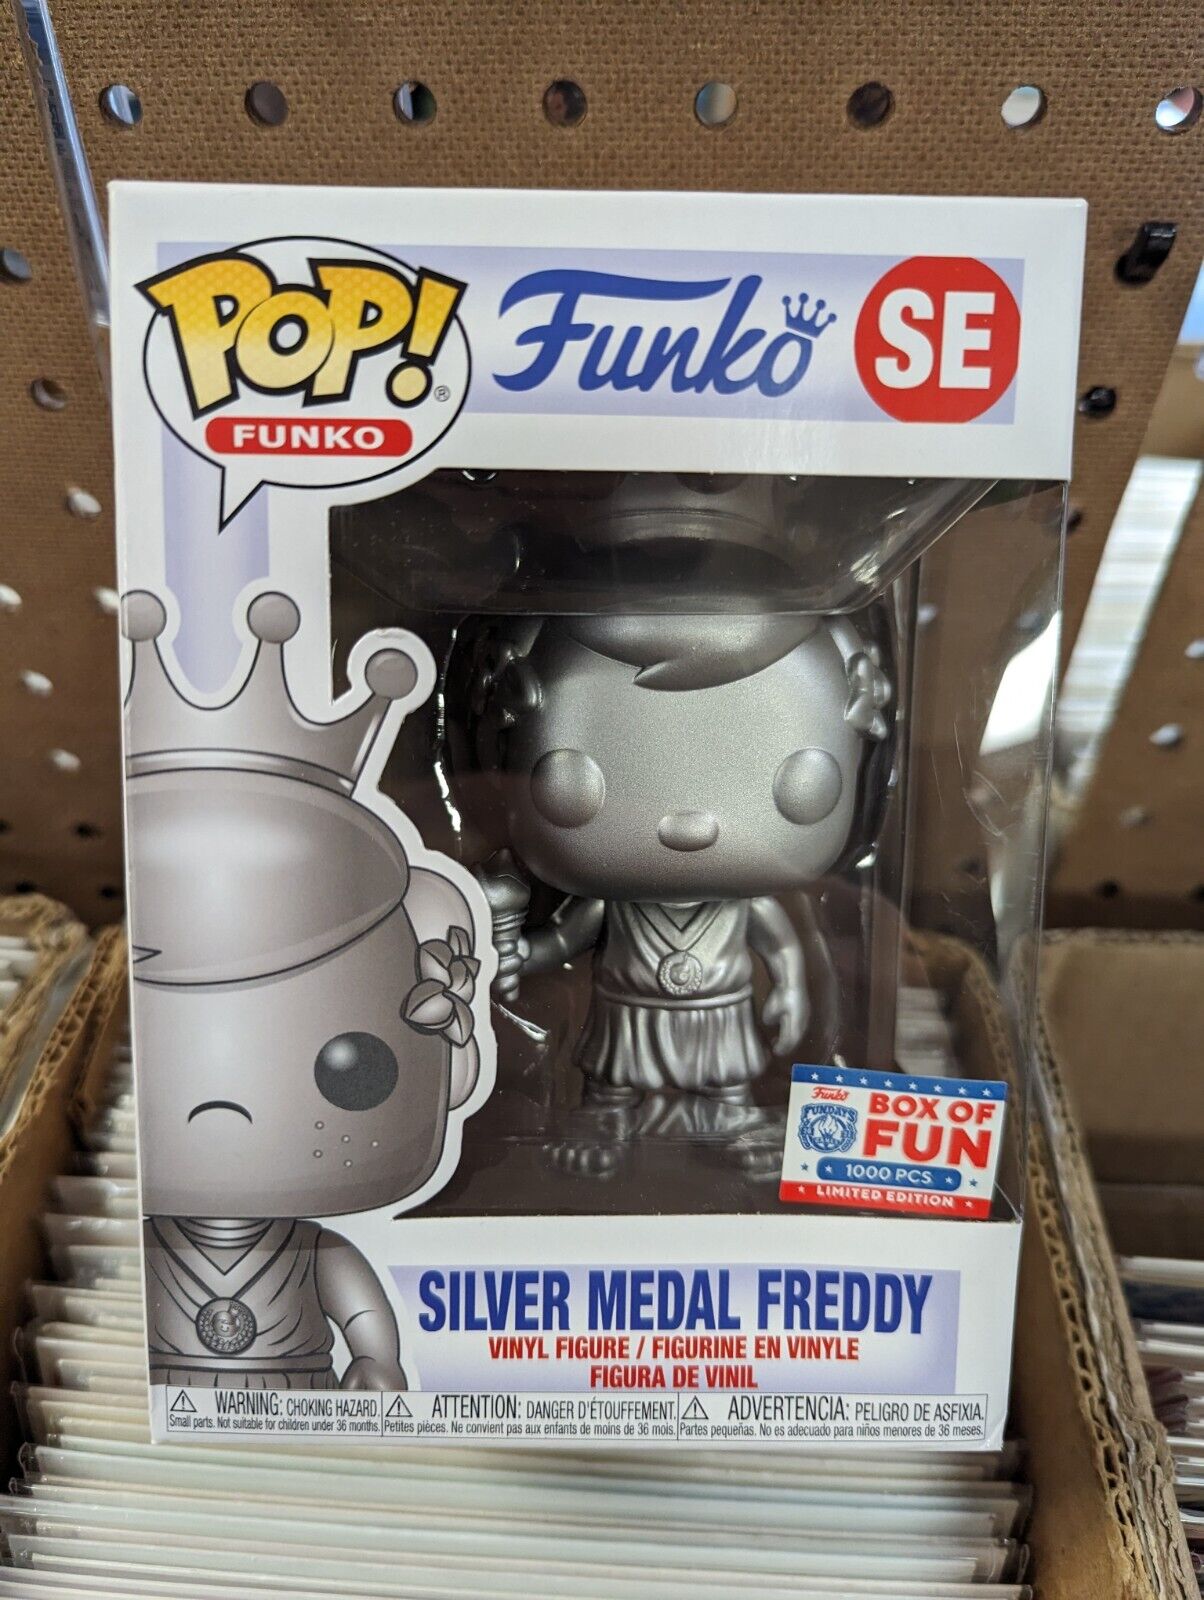 Funko Pop Silver Medal Freddy SE Box Of Fun 1000 Pcs